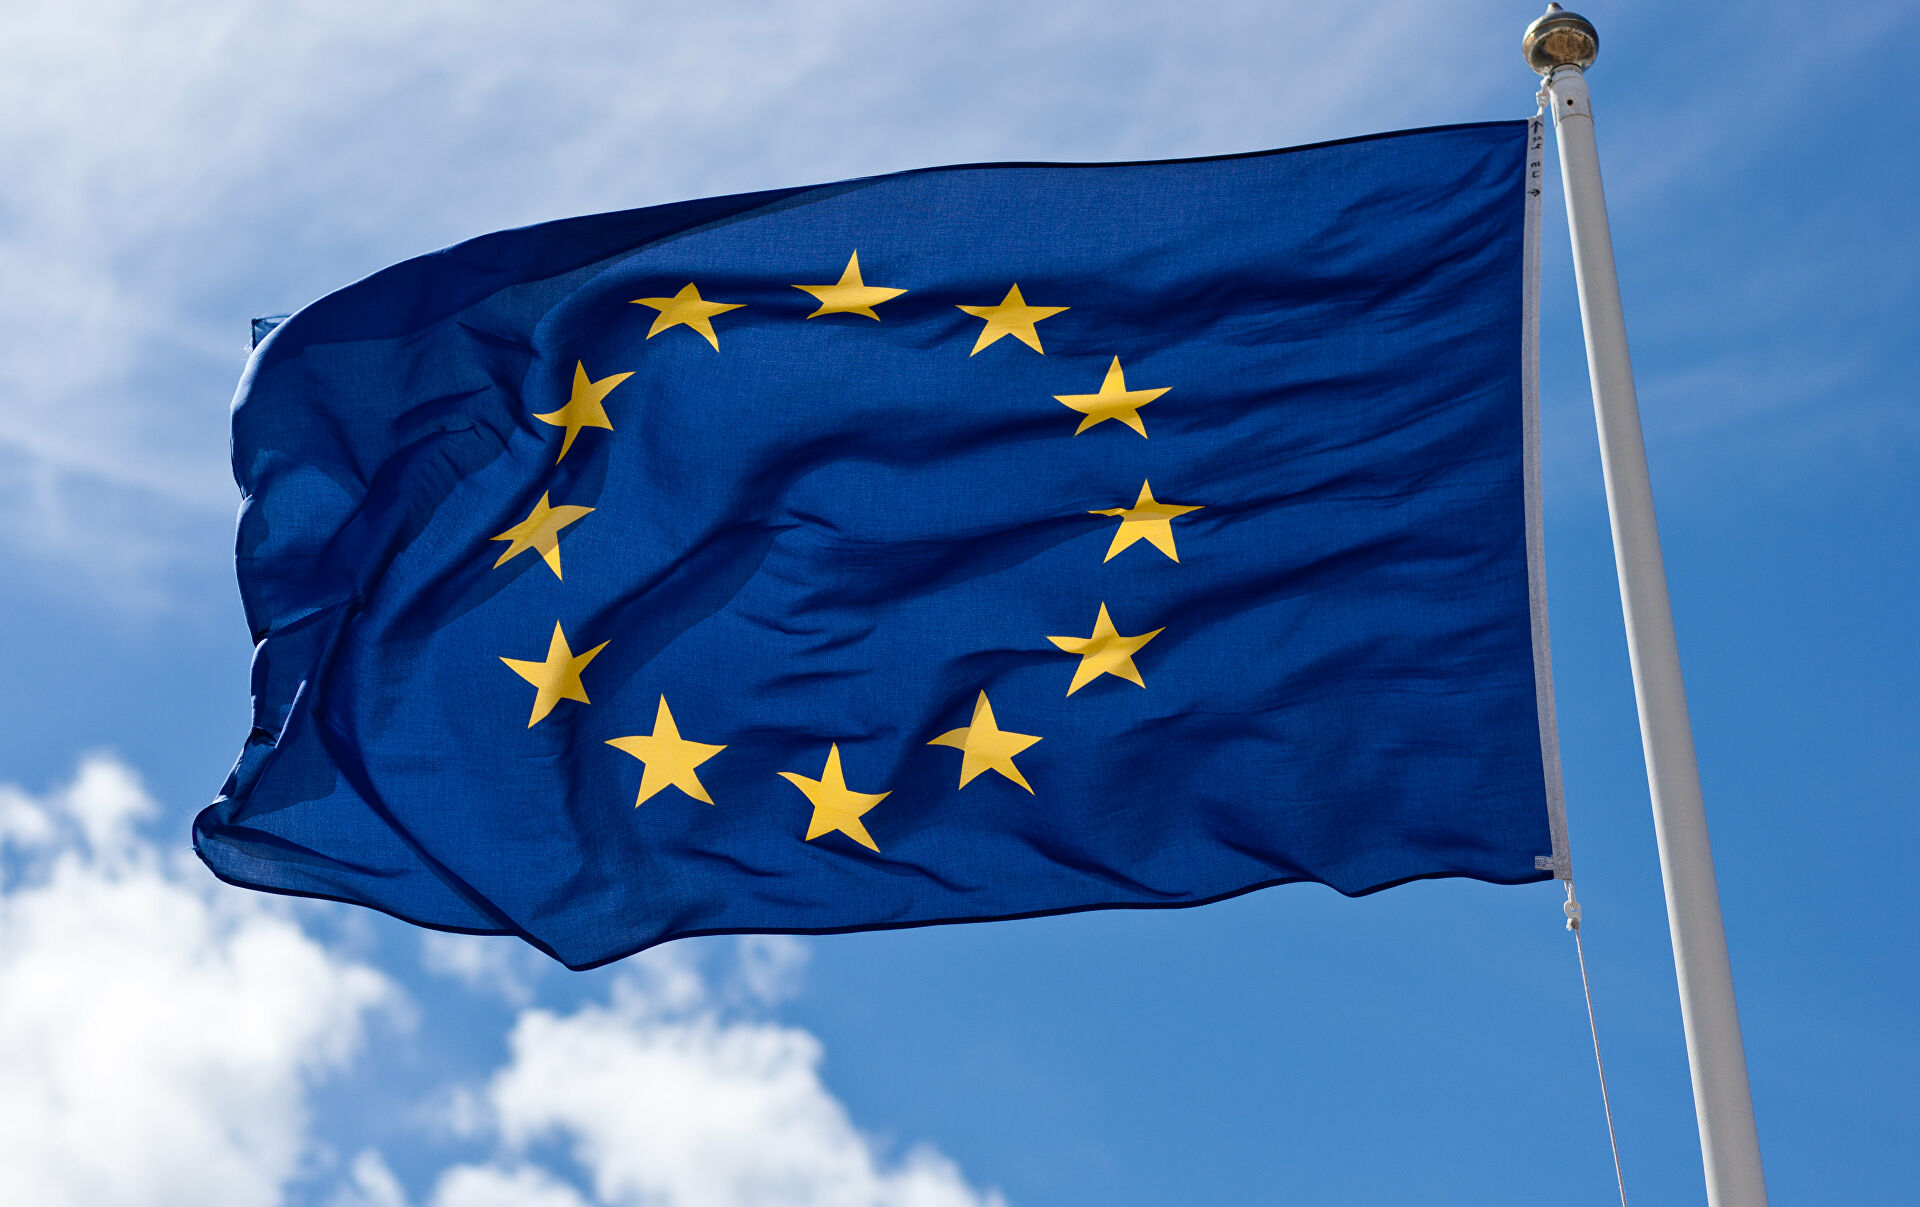 ЕС и Еврокомиссия приветствовали резолюцию Генассамблеи ООН